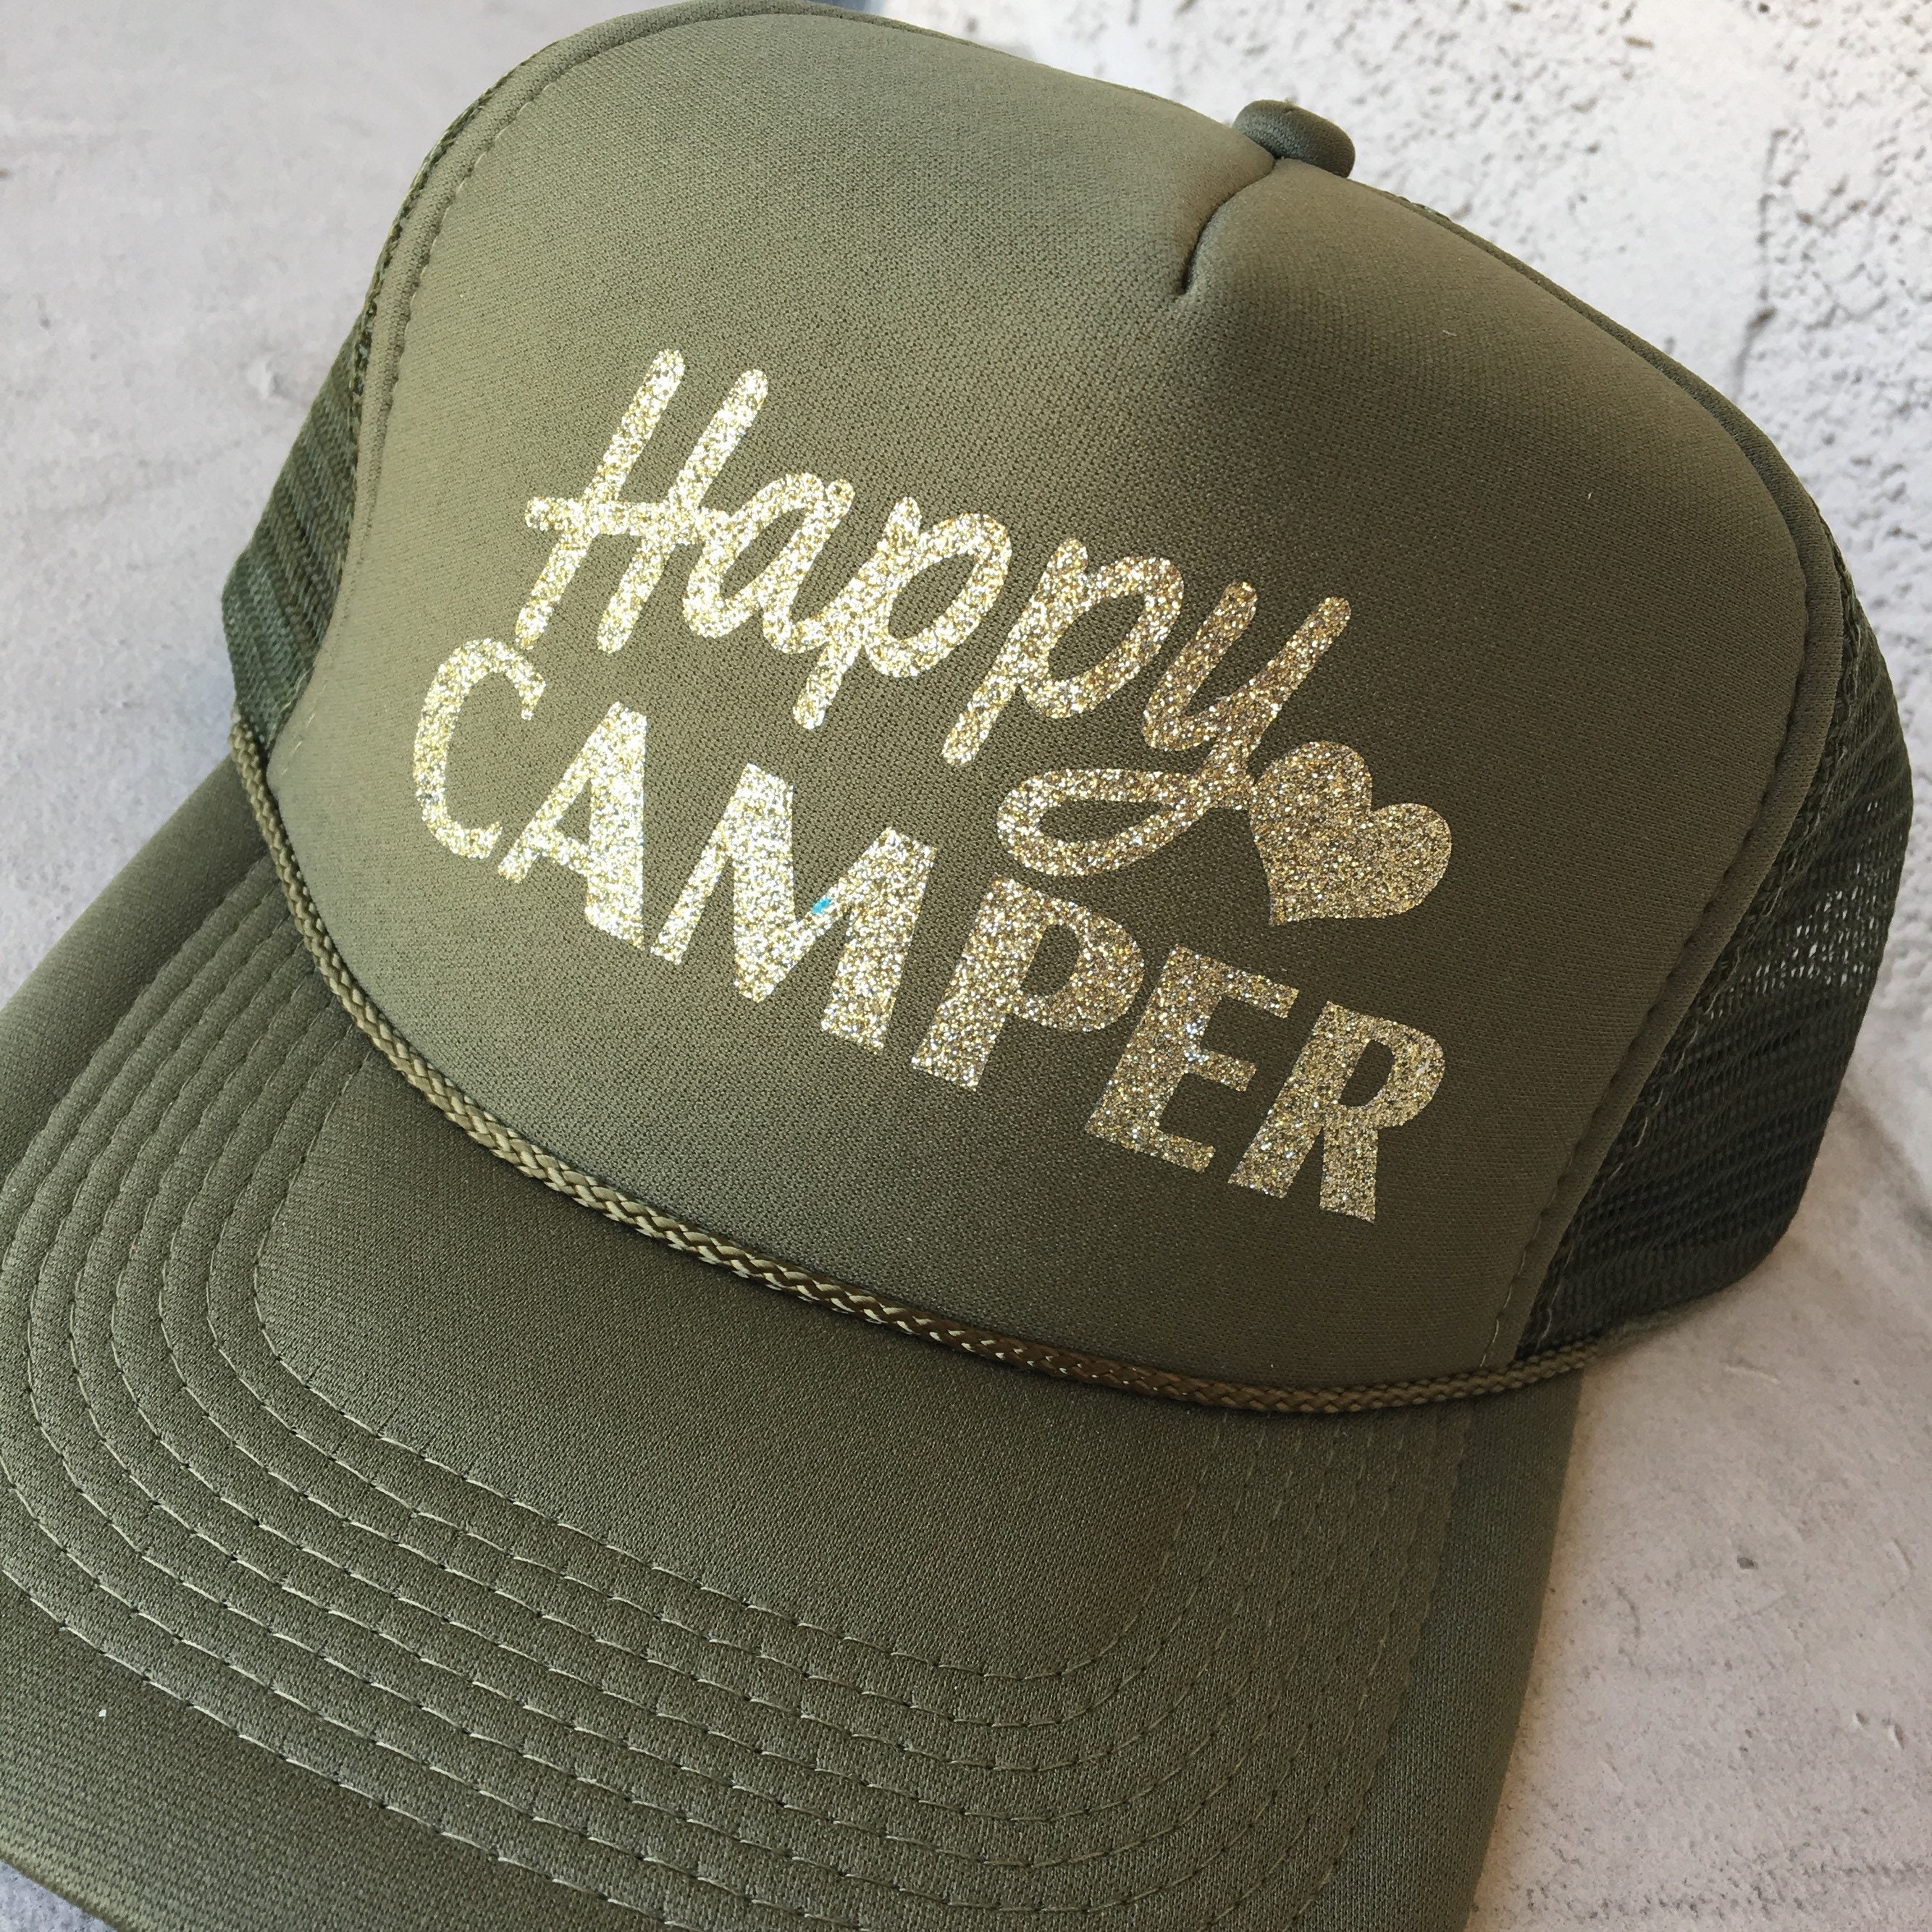 Aliner Camp Gear Navy Baseball Cap Happy Camper, Camping Gear, Night Lighting